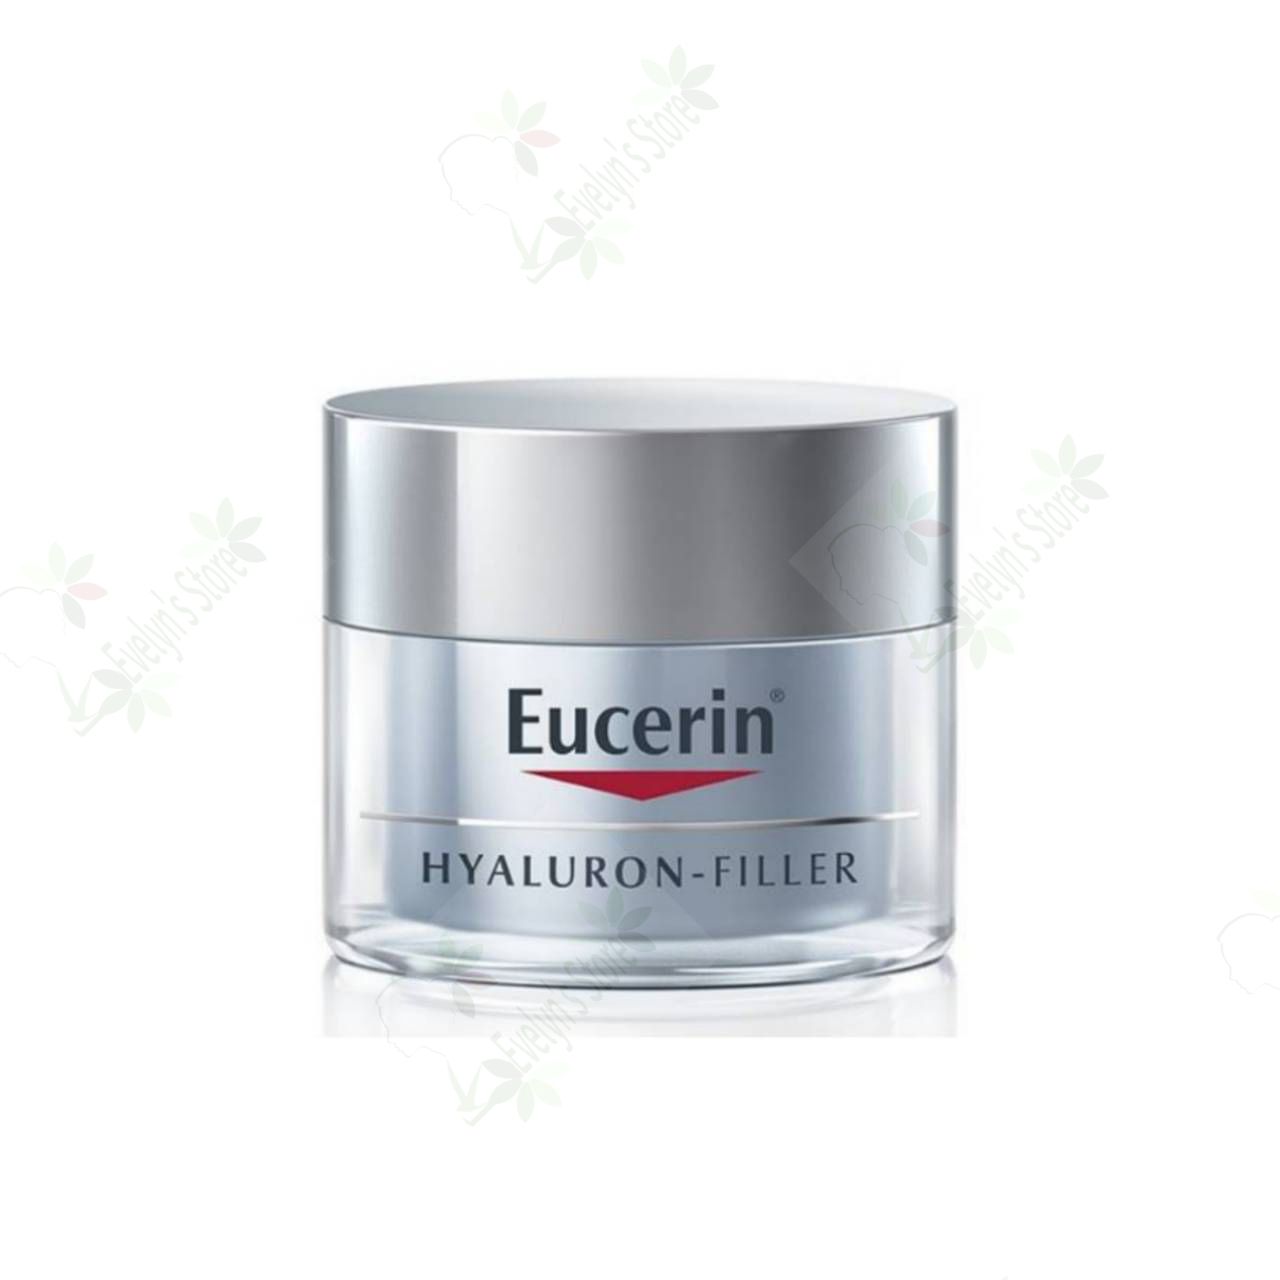 ยูเซอริน ไฮยาลูรอน-ฟิลเลอร์ ไนท์ ครีม 20มล. (ไฮยาไนท์20ml.) Eucerin Hyaluron-Filler Night Cream 20ml.